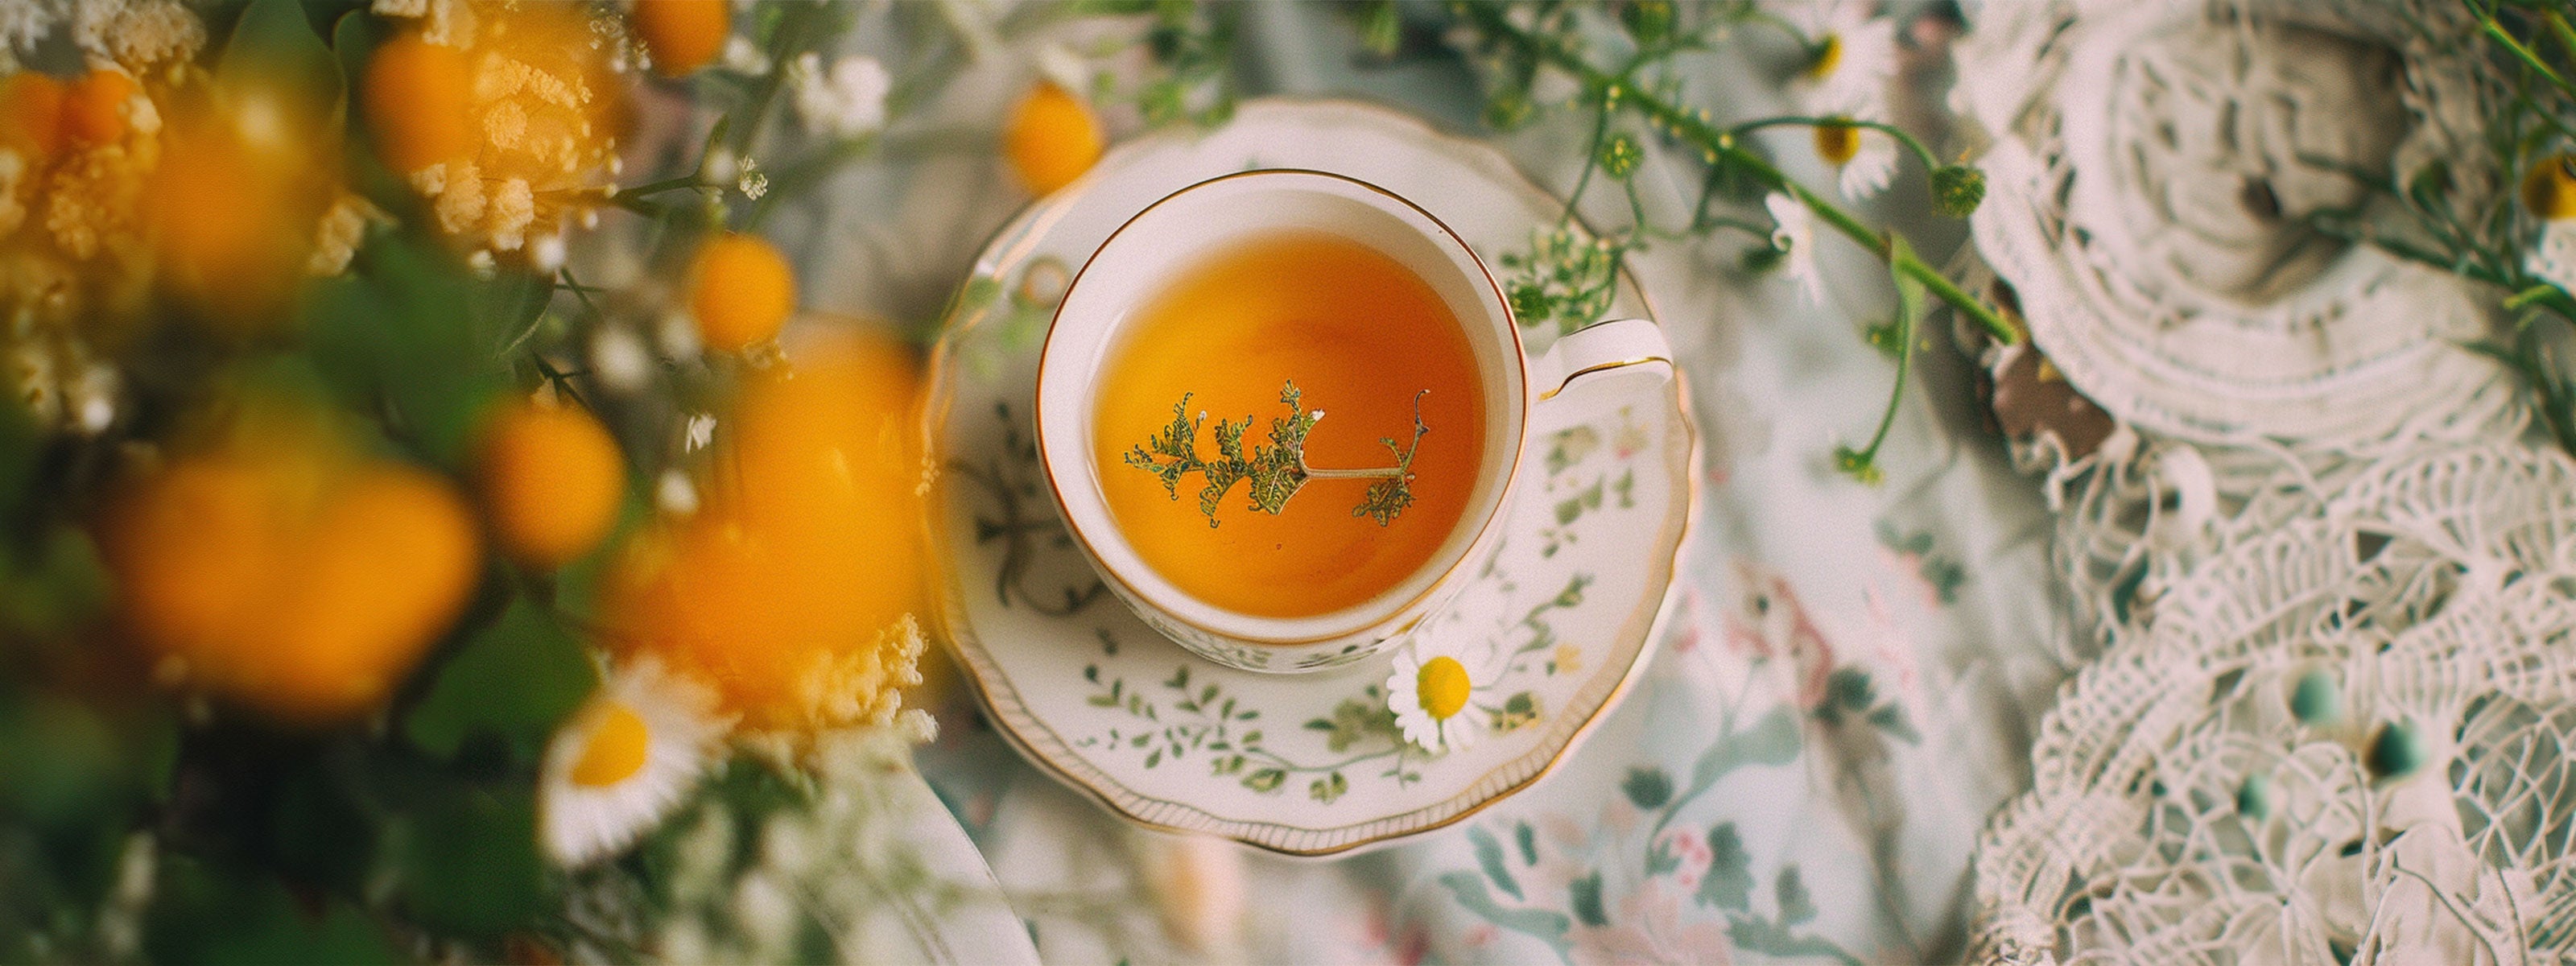 Eine elegante Tasse Tee auf einem dekorativen Unterteller, umgeben von zarten gelben Blumen und grünen Blättern. Der Tee hat eine klare, bernsteinfarbene Flüssigkeit und eine kleine Blume schwimmt auf der Oberfläche. Das Arrangement vermittelt ein Gefühl von Frische und Natürlichkeit.